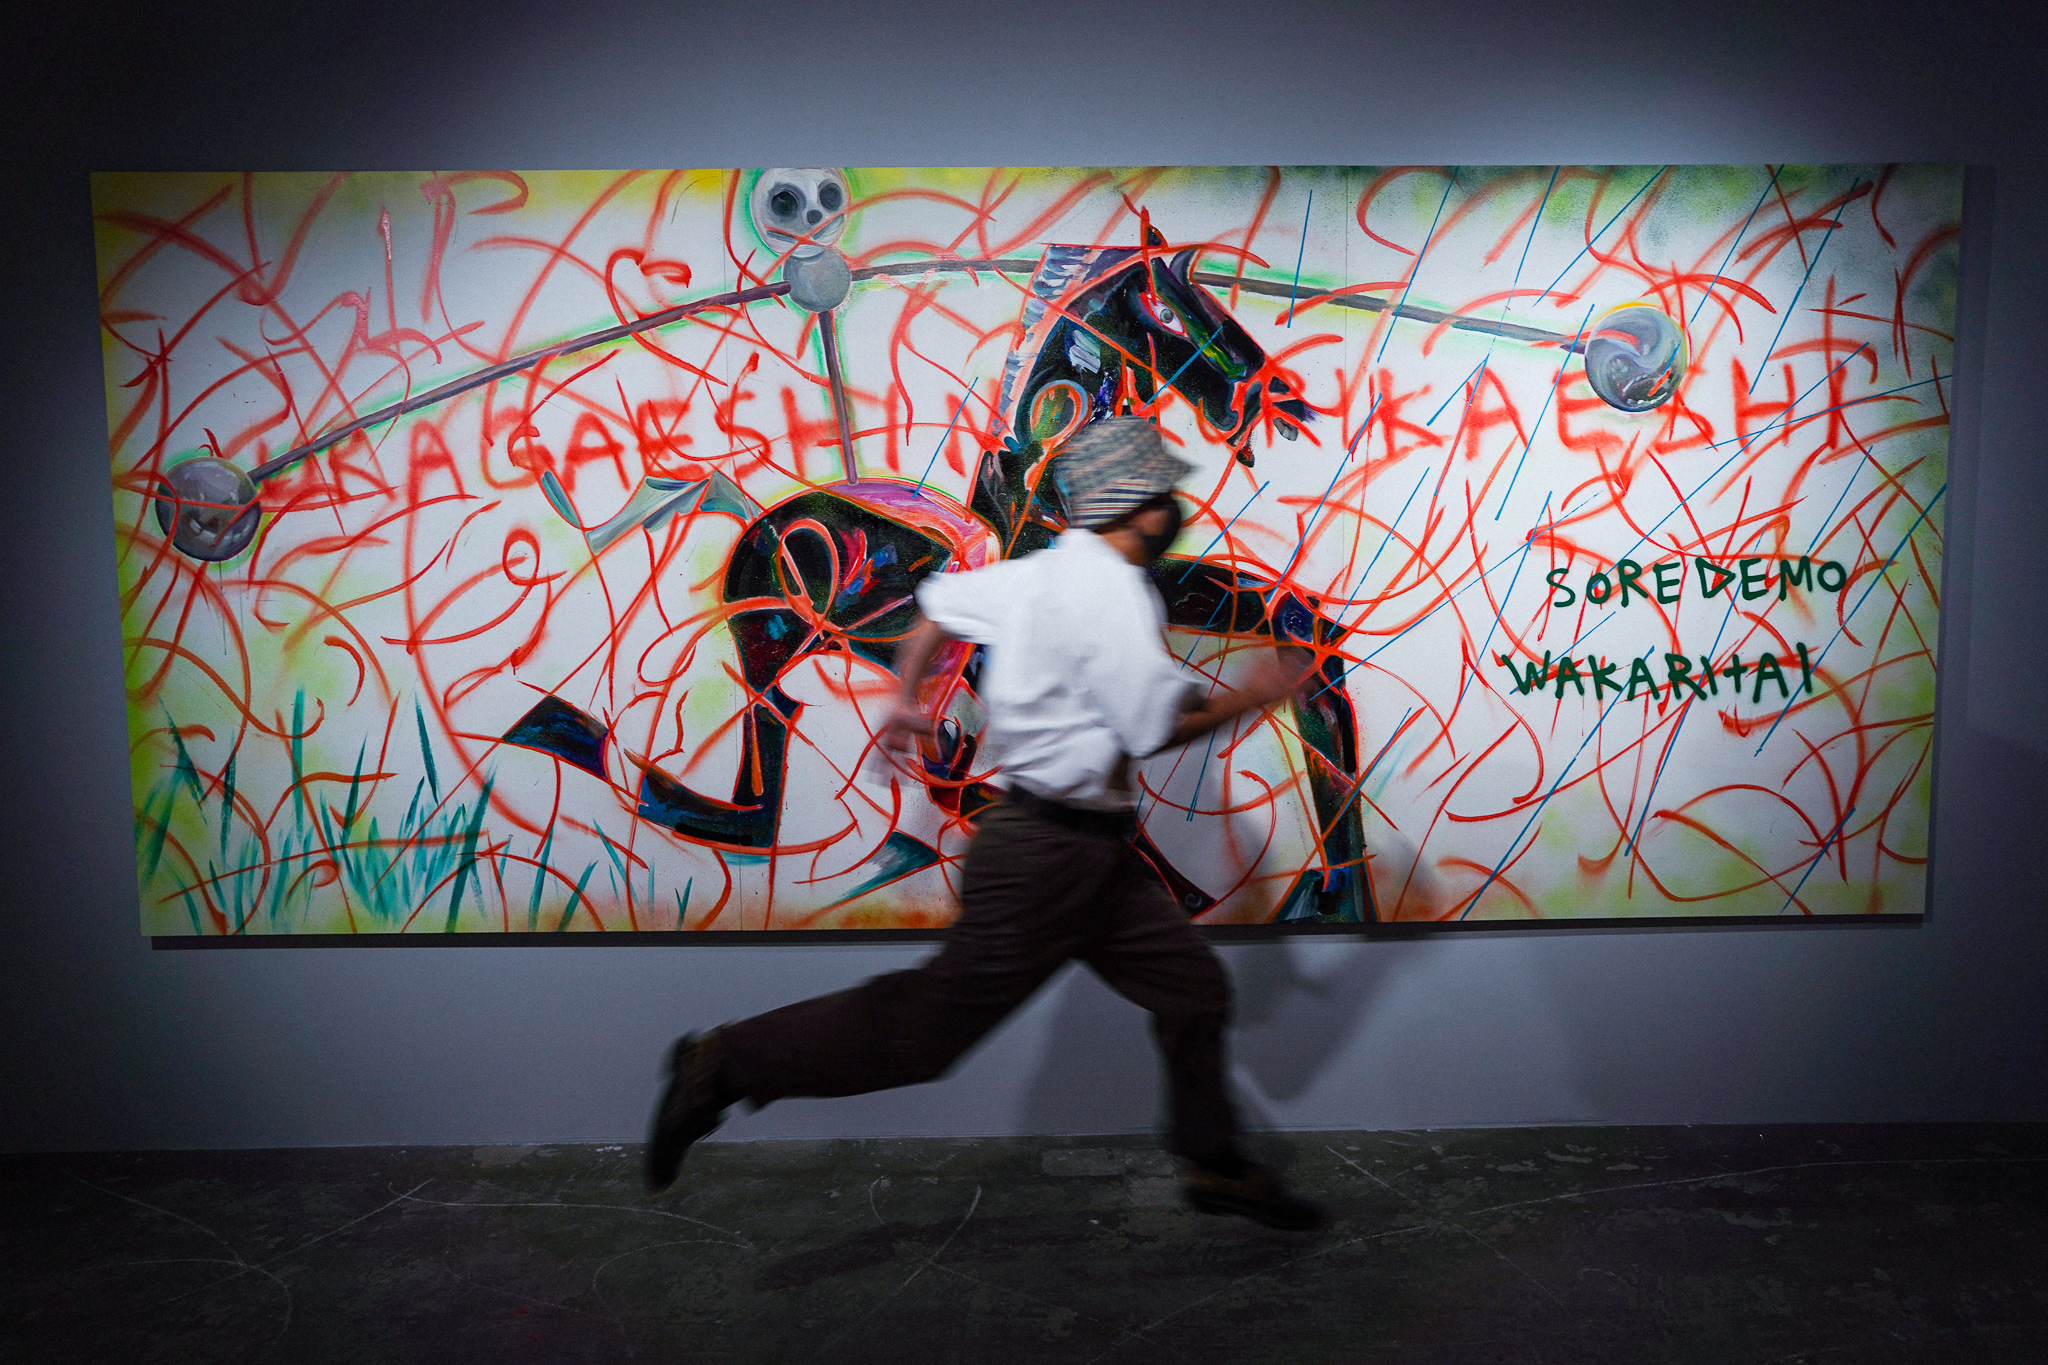 アーティスト、NAZEの作品に描かれた意味深なメッセージの謎に迫る